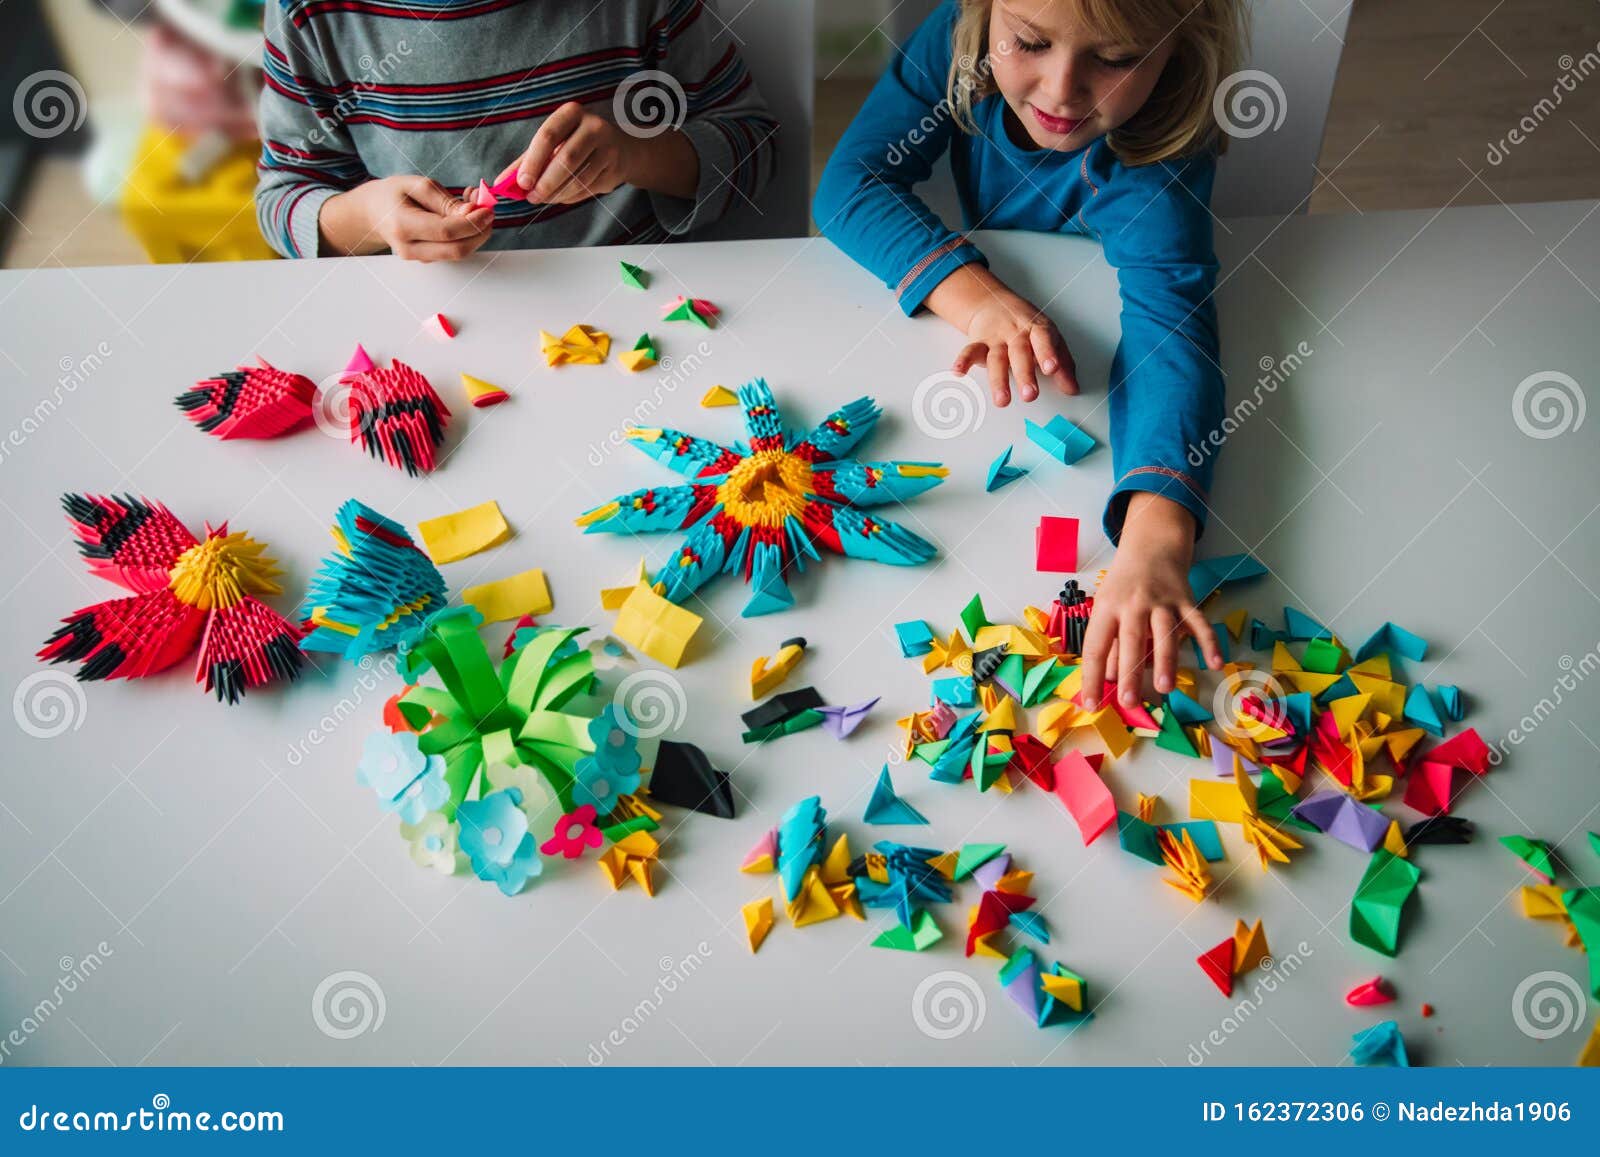 Decir a un lado cartucho inyectar Niños Haciendo Artesanía De Origami Con Papel, Actividades De Aprendizaje  Foto de archivo - Imagen de plegamiento, familia: 162372306